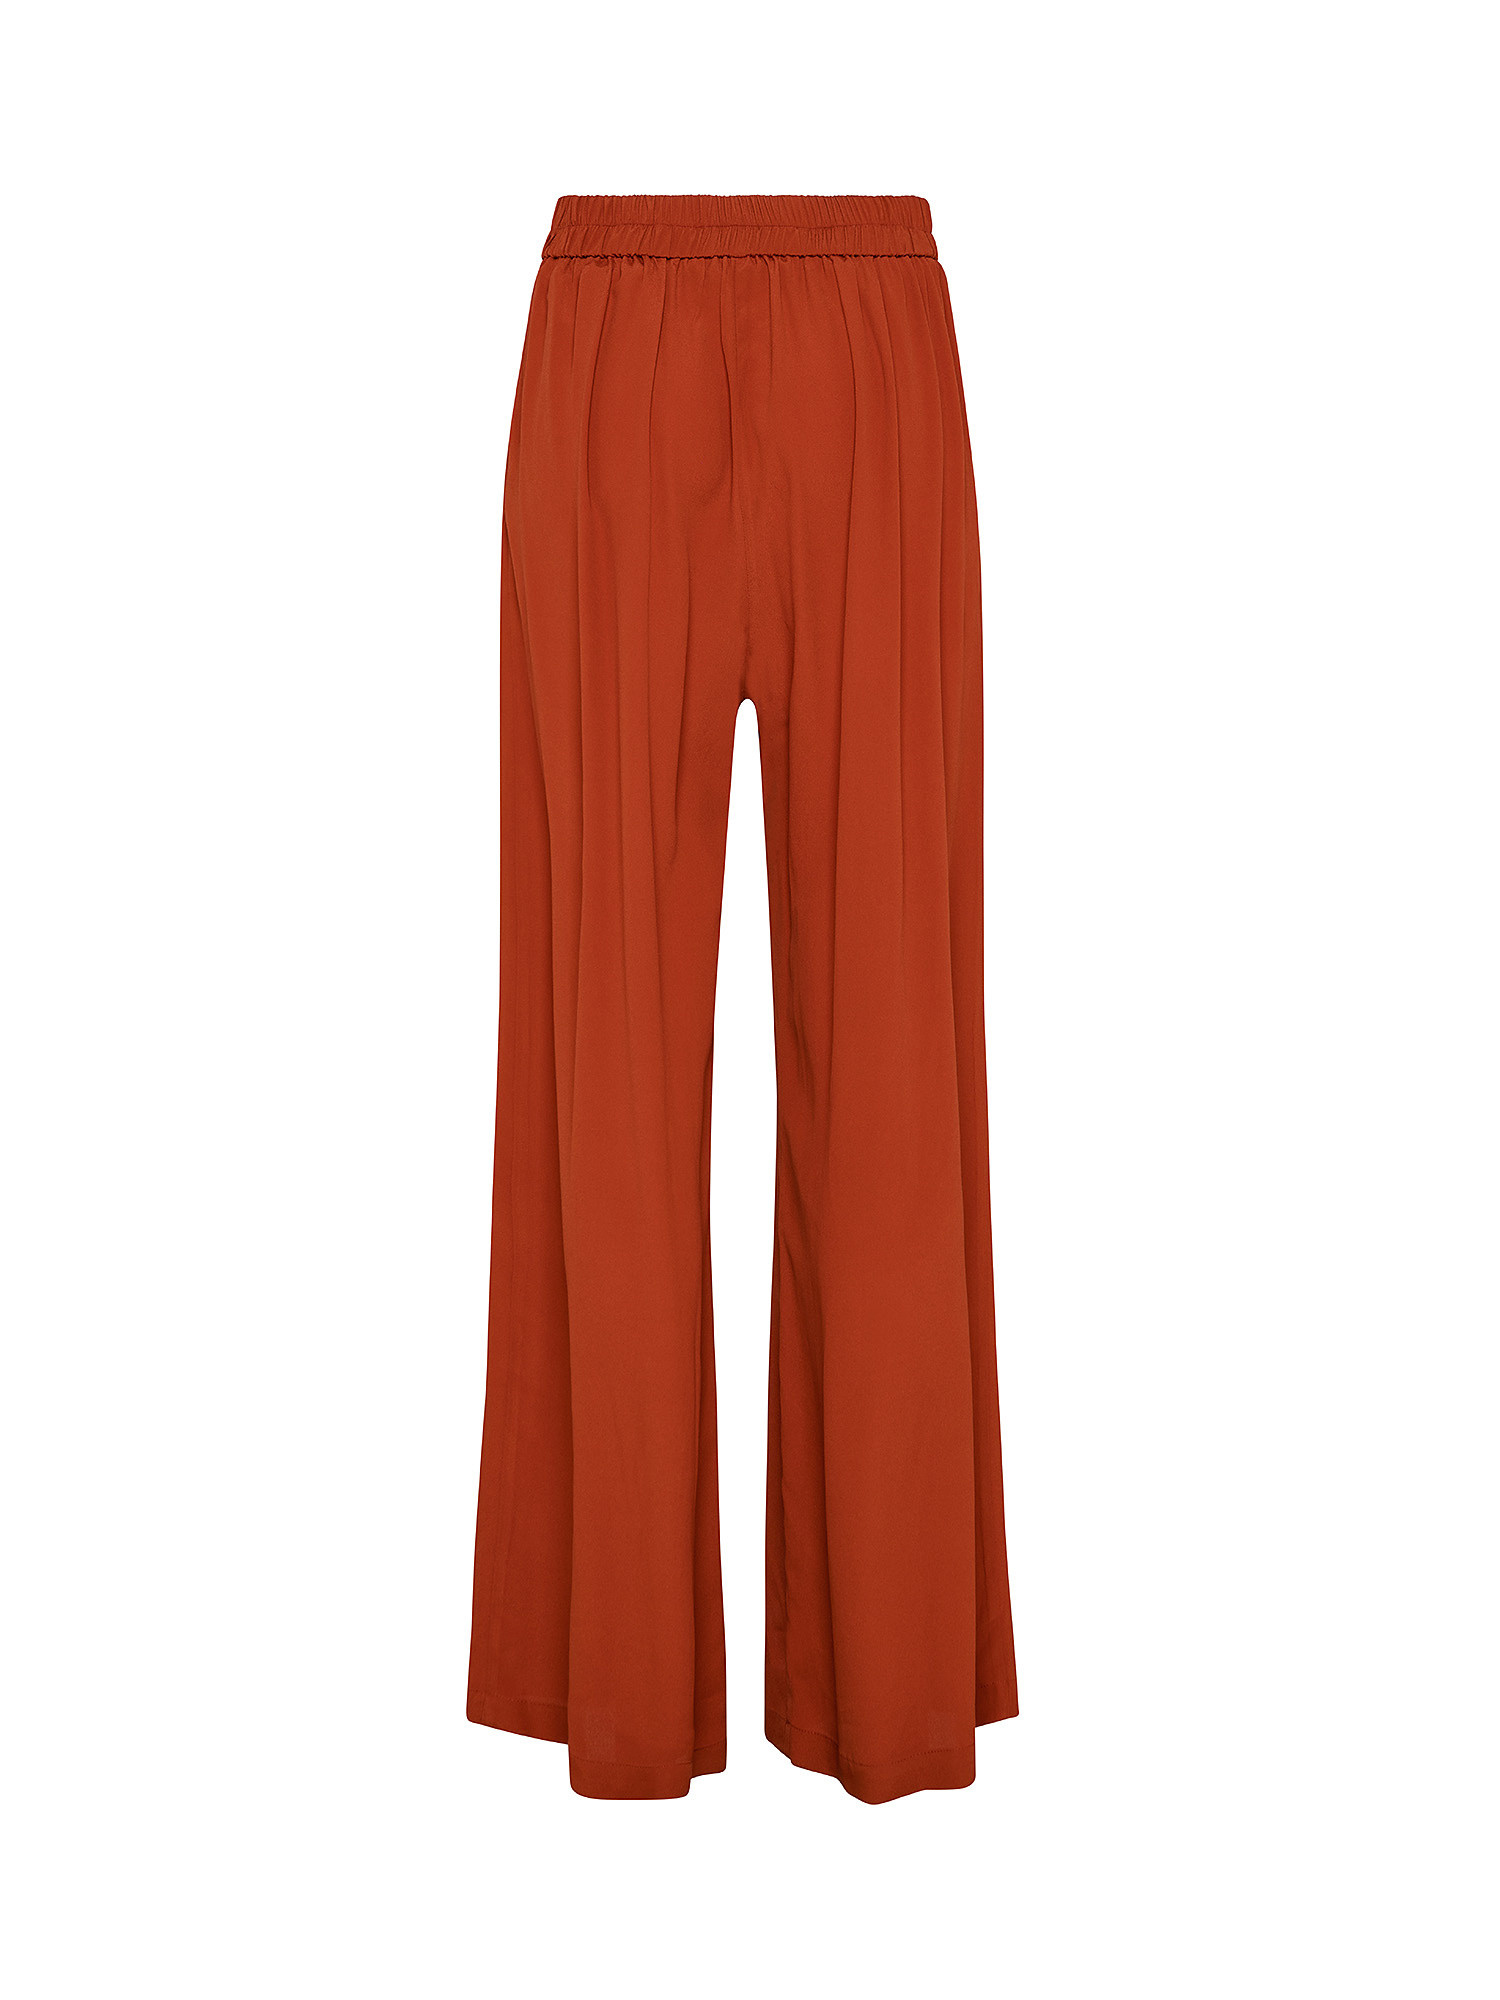 Pantaloni Aspen in misto cràªpe-seta, Rosso, large image number 1